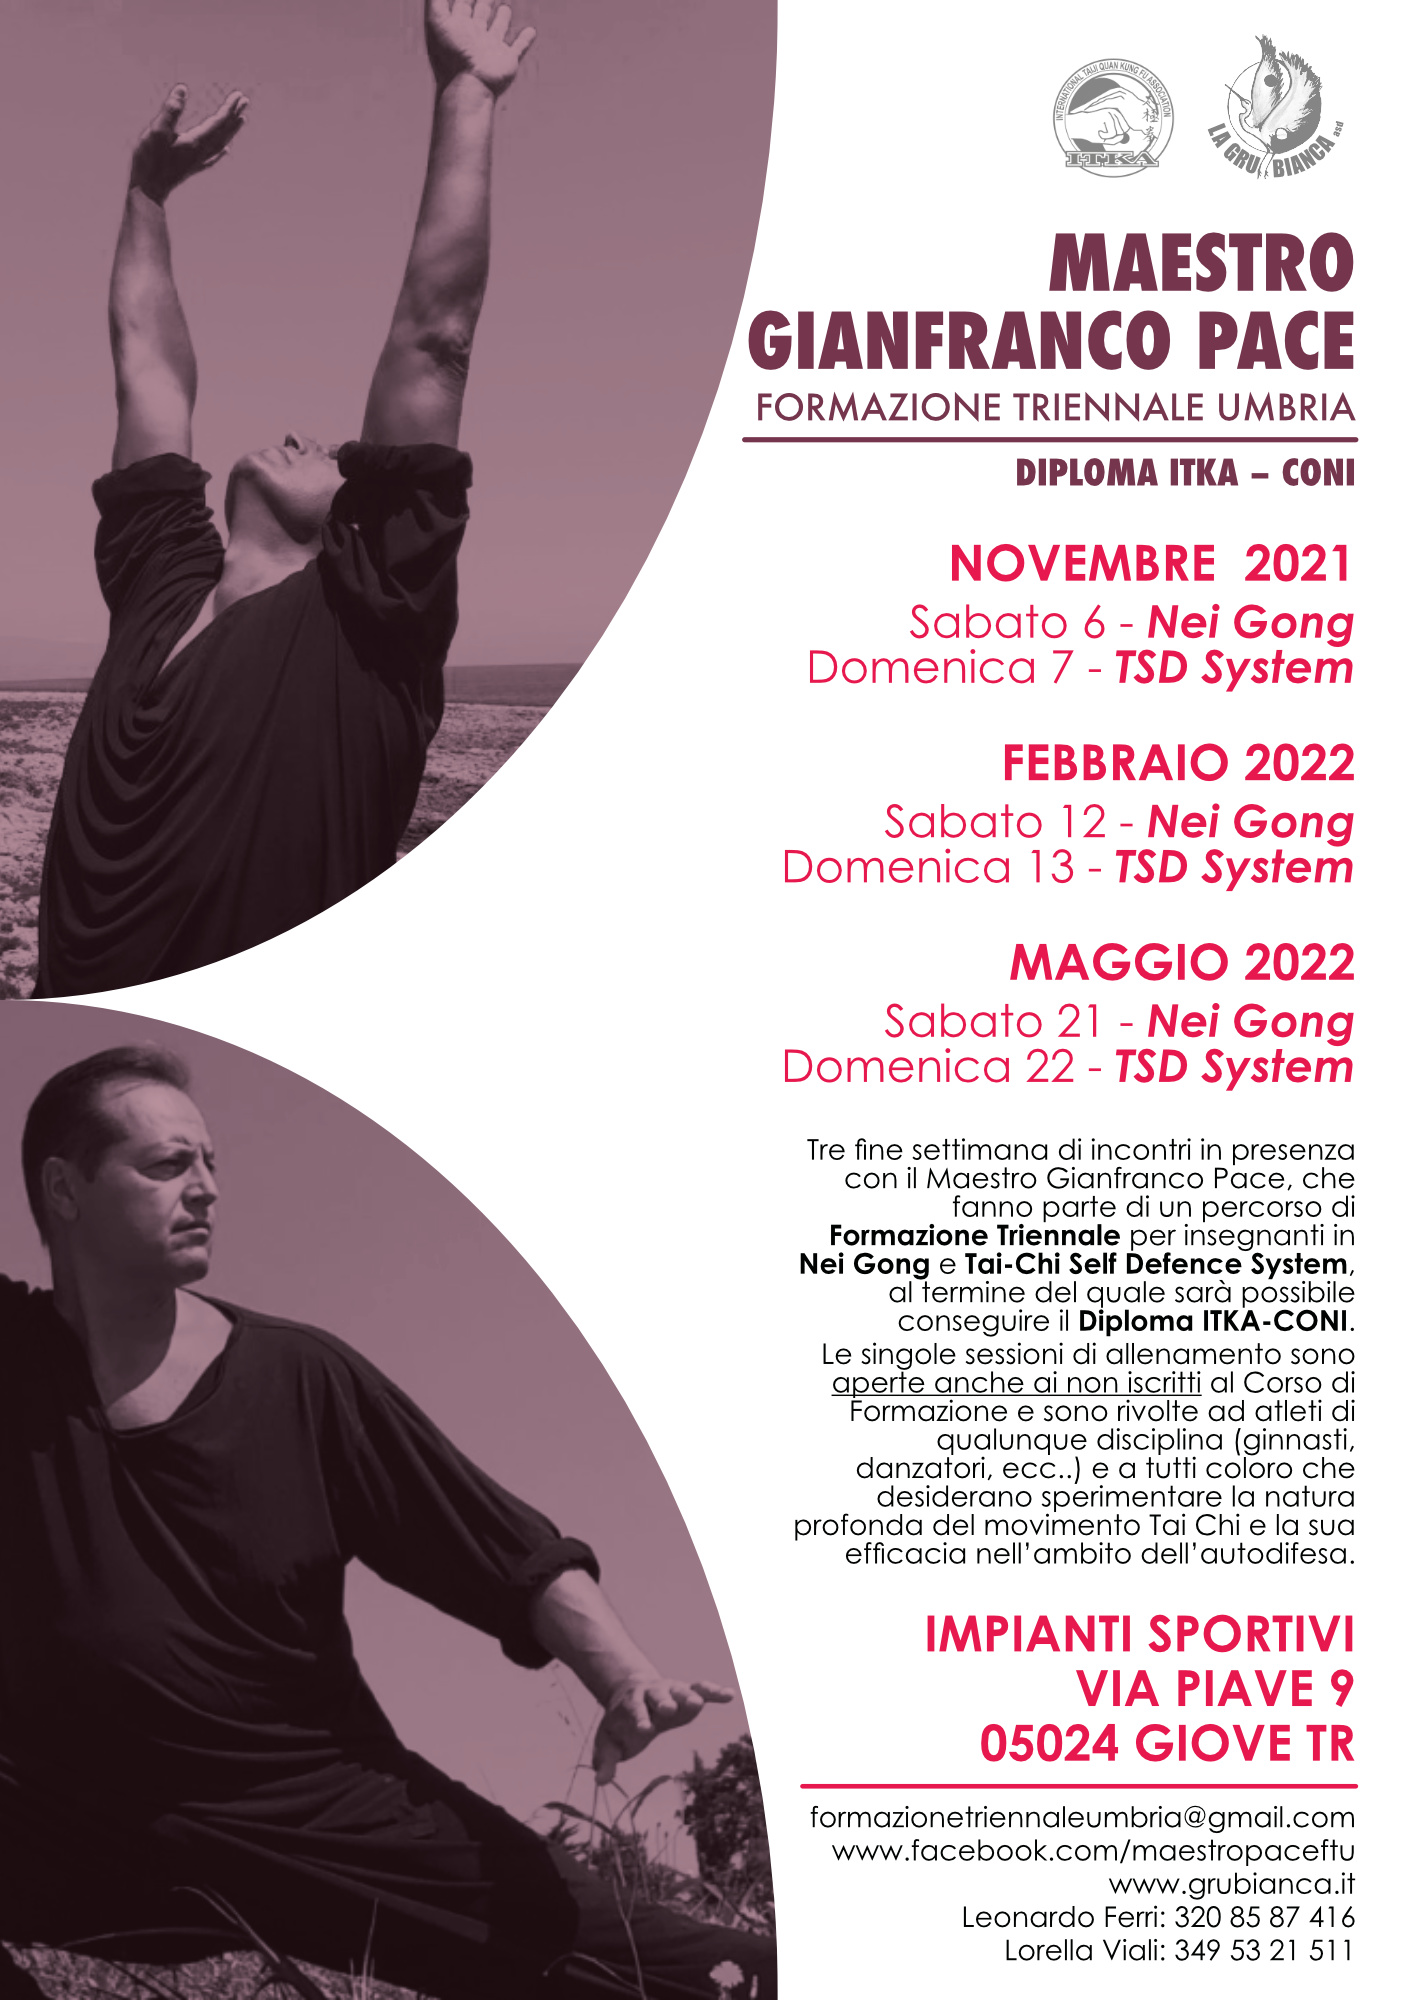 Formazione Triennale Umbria Maestro Gianfranco Pace